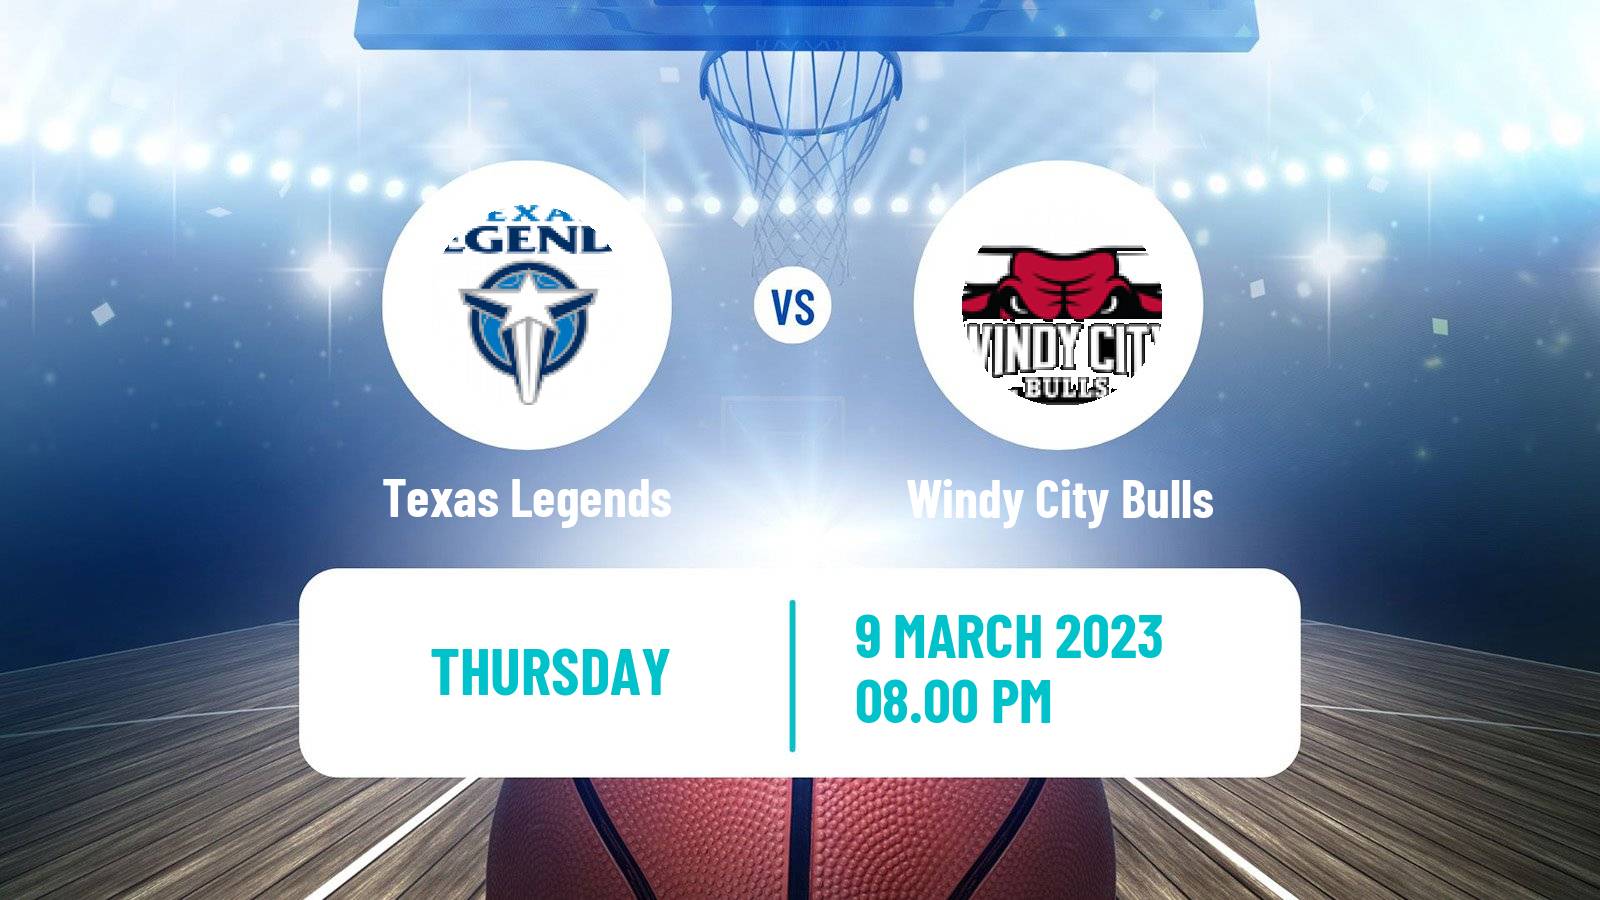 Basketball NBA G-League Texas Legends - Windy City Bulls